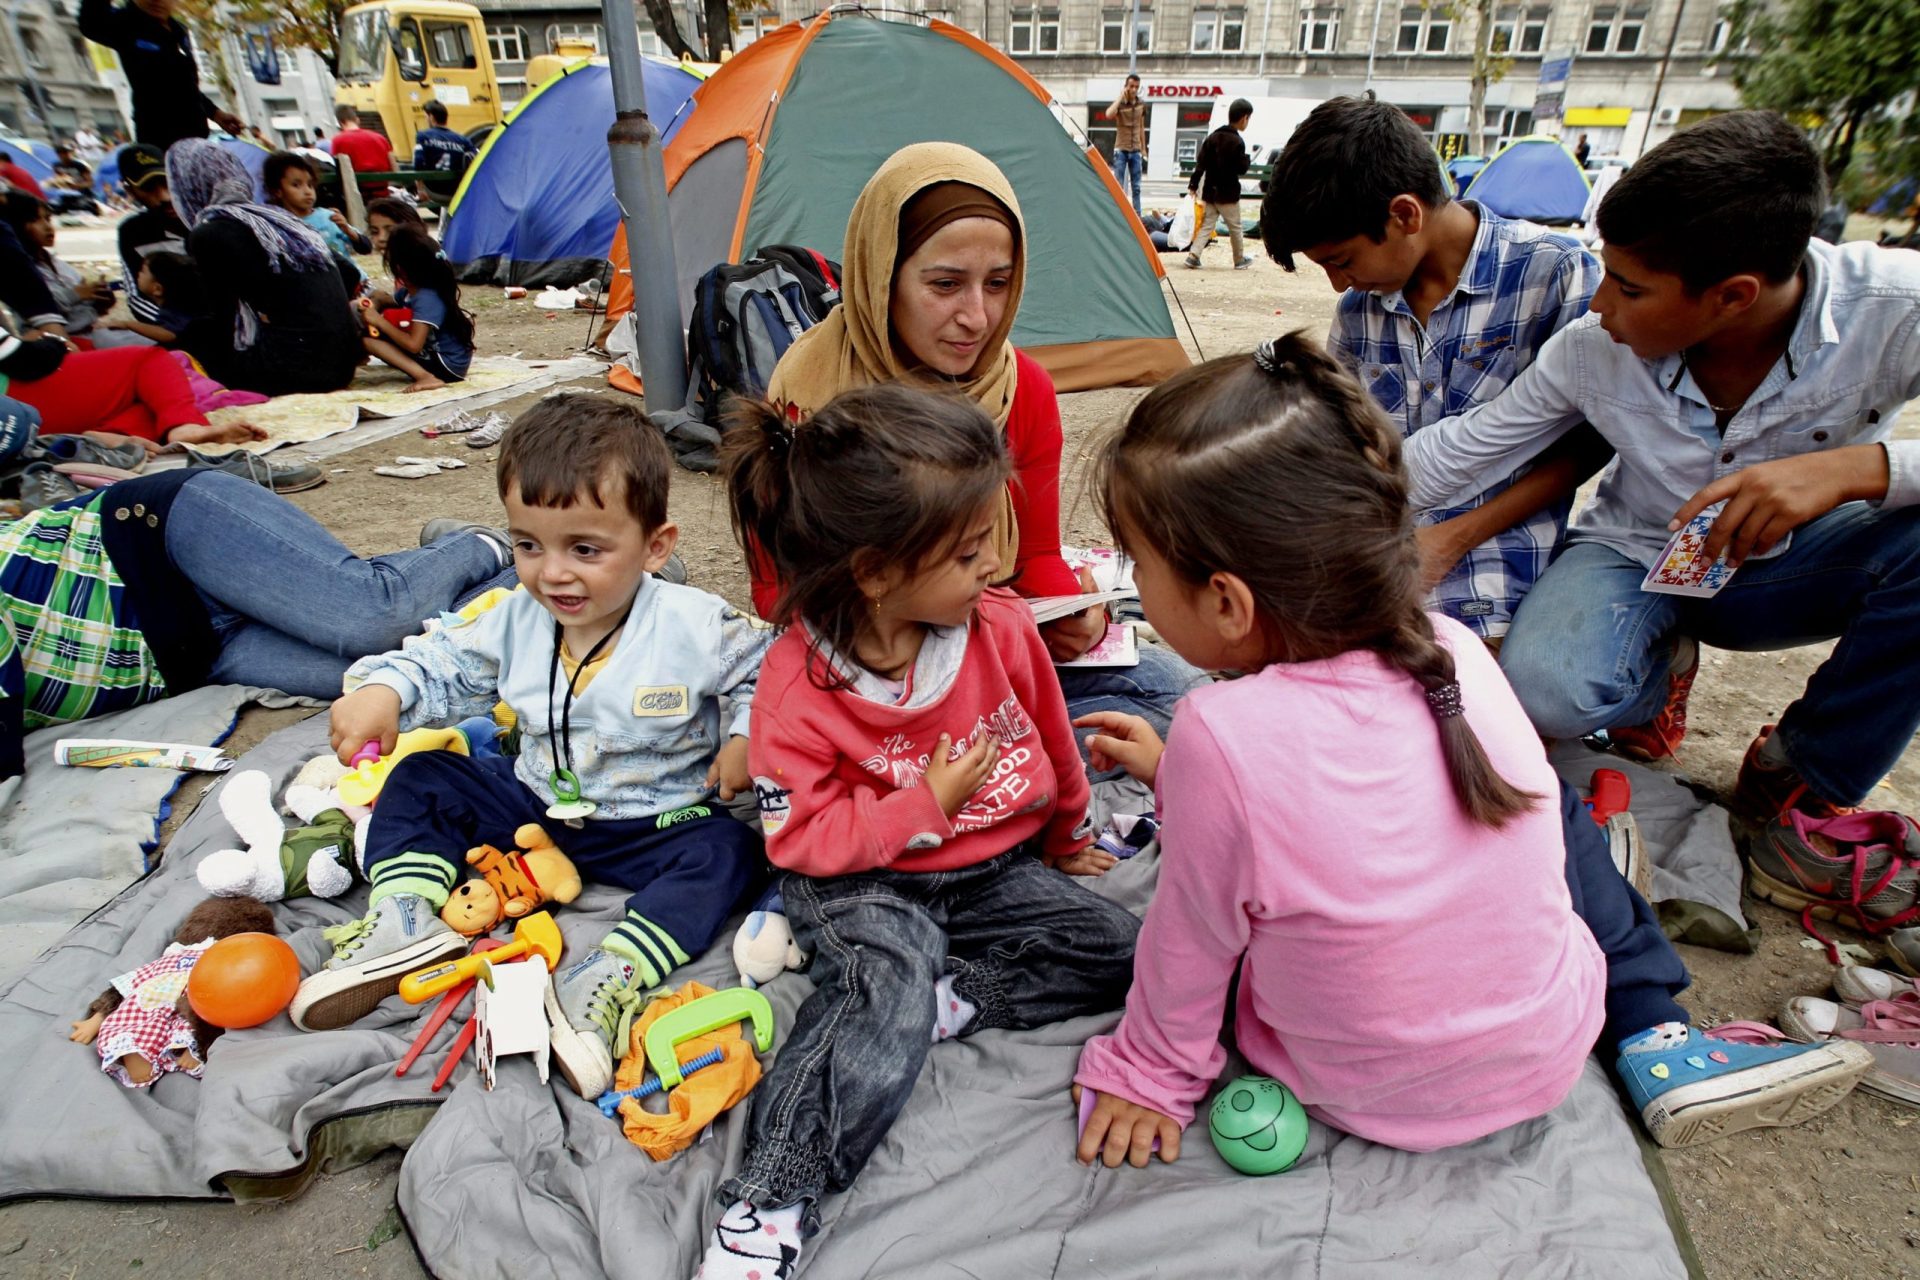 Refugiado ou migrante? As Nações Unidas esclarecem as diferenças